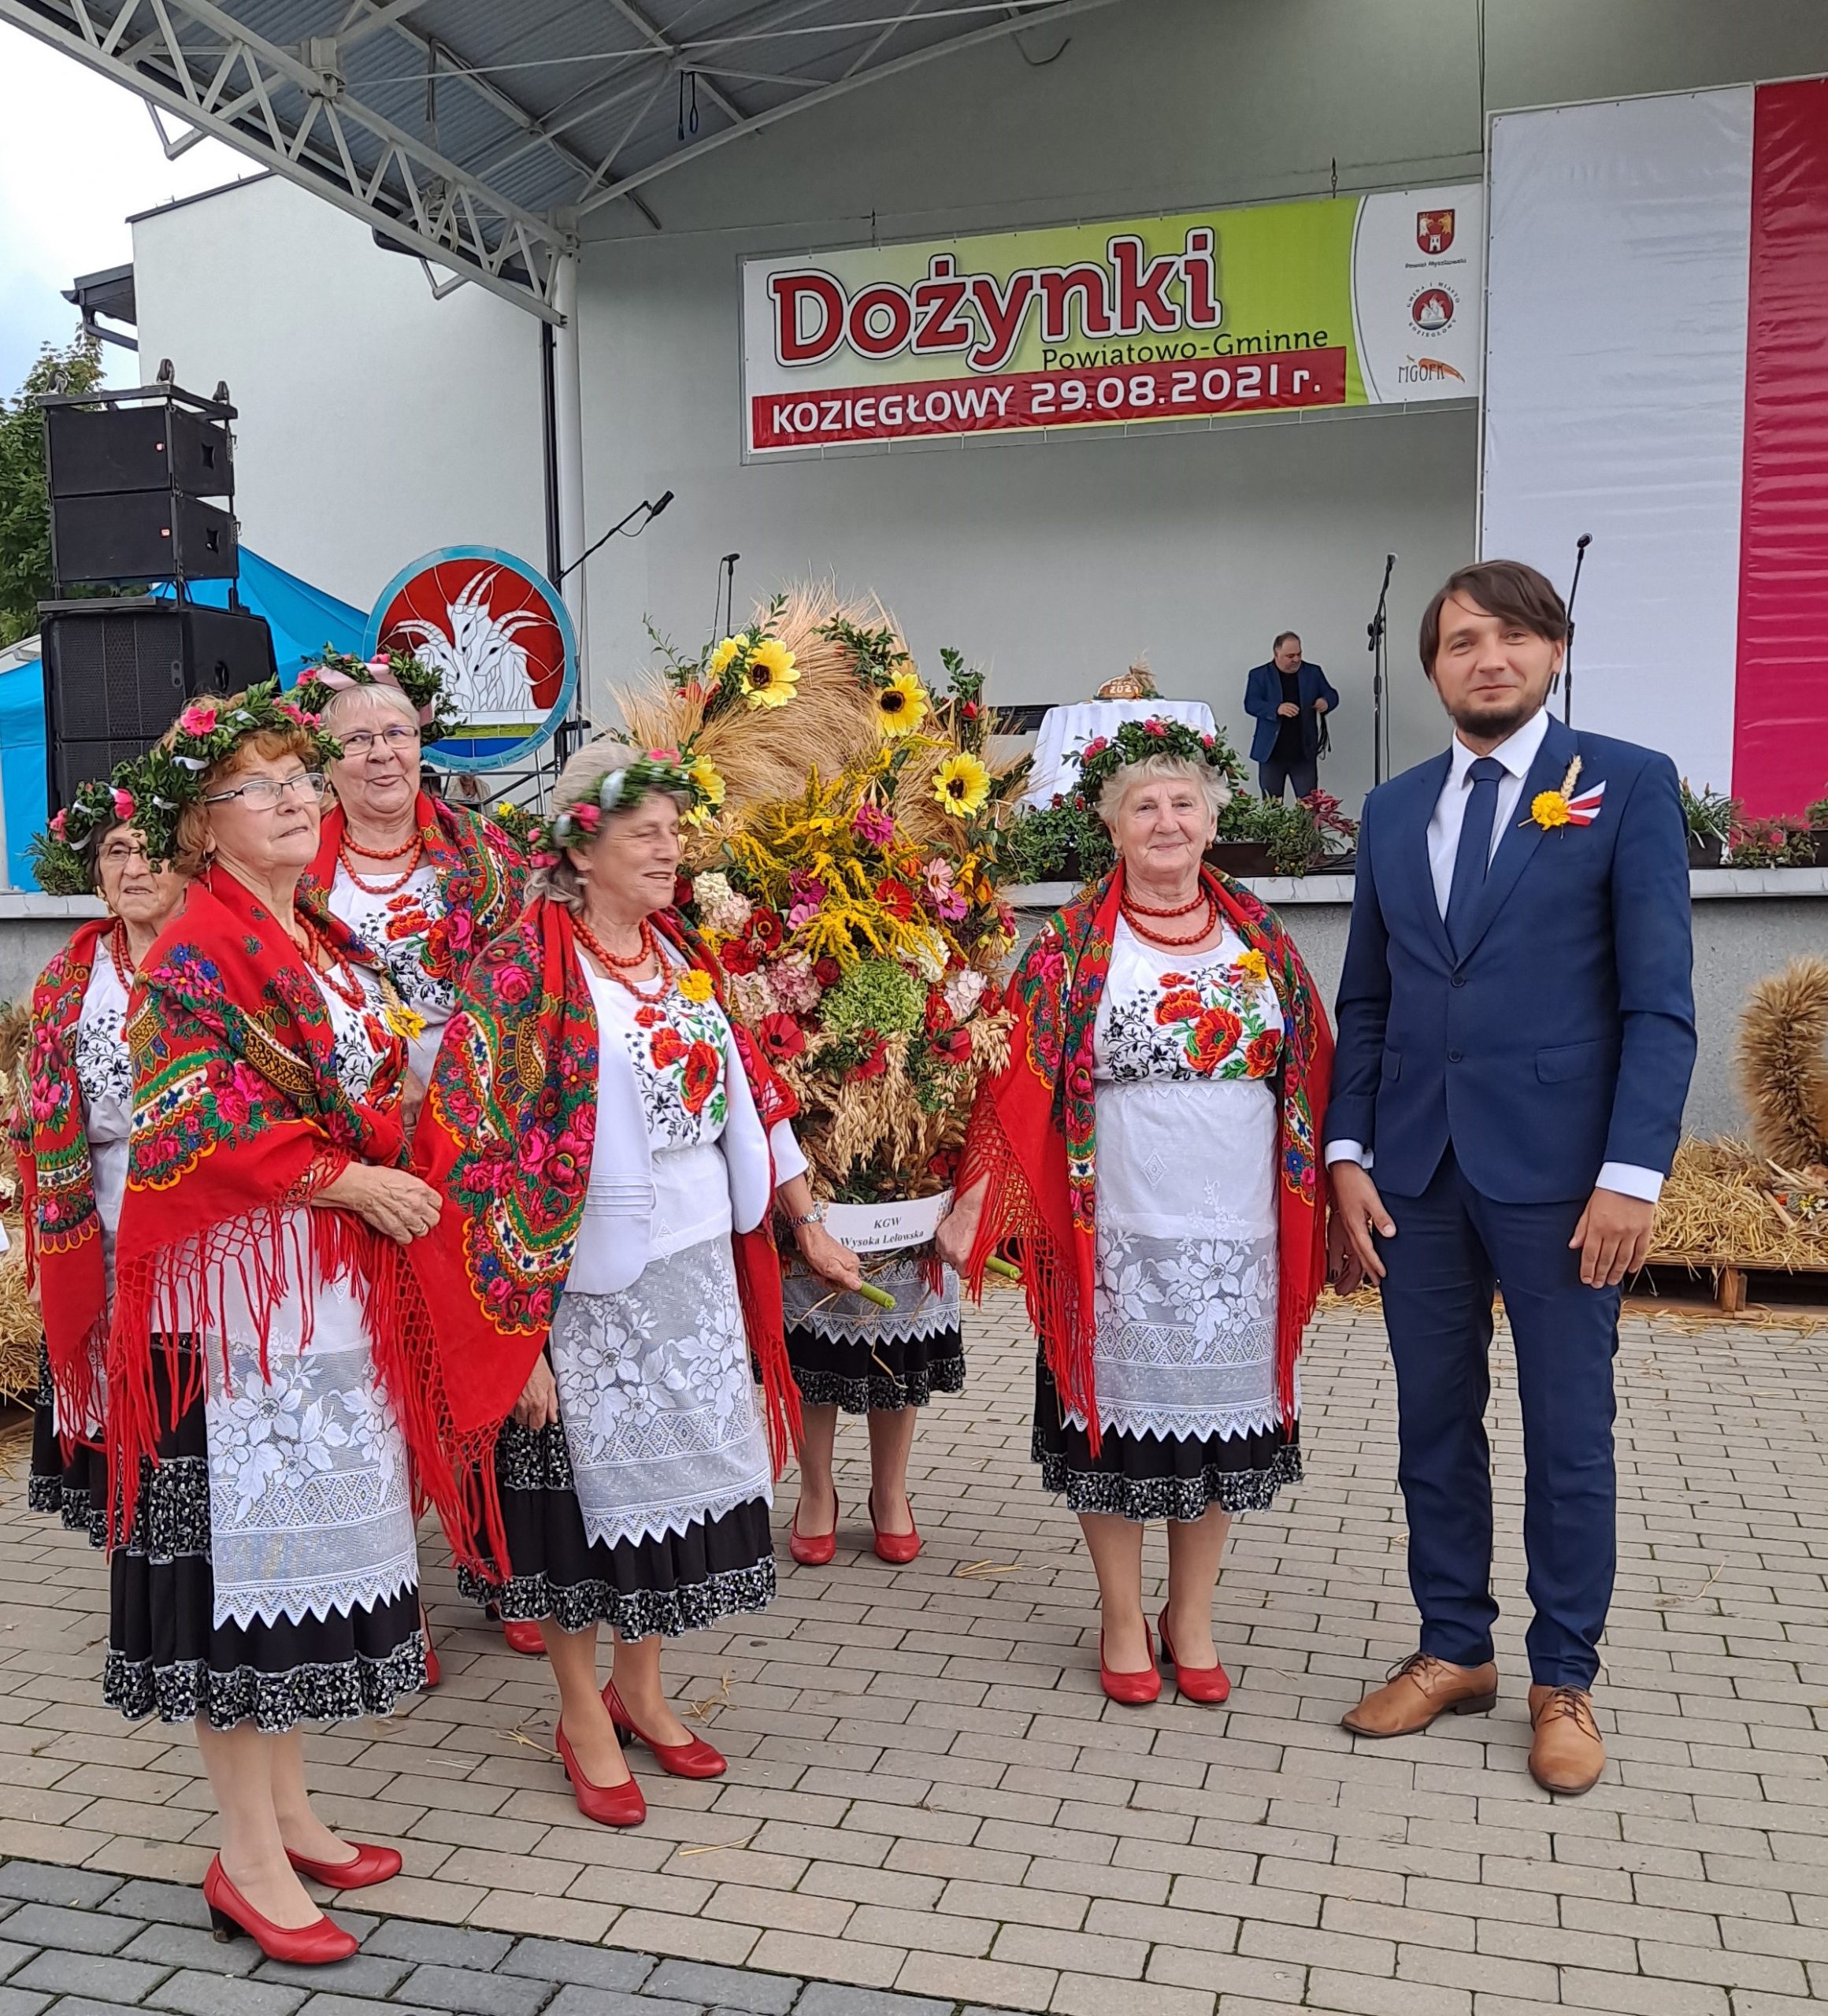 Nagrodzona rolniczka z Suliszowic podczas Powiatowych Dożynek w Koziegłowach 8